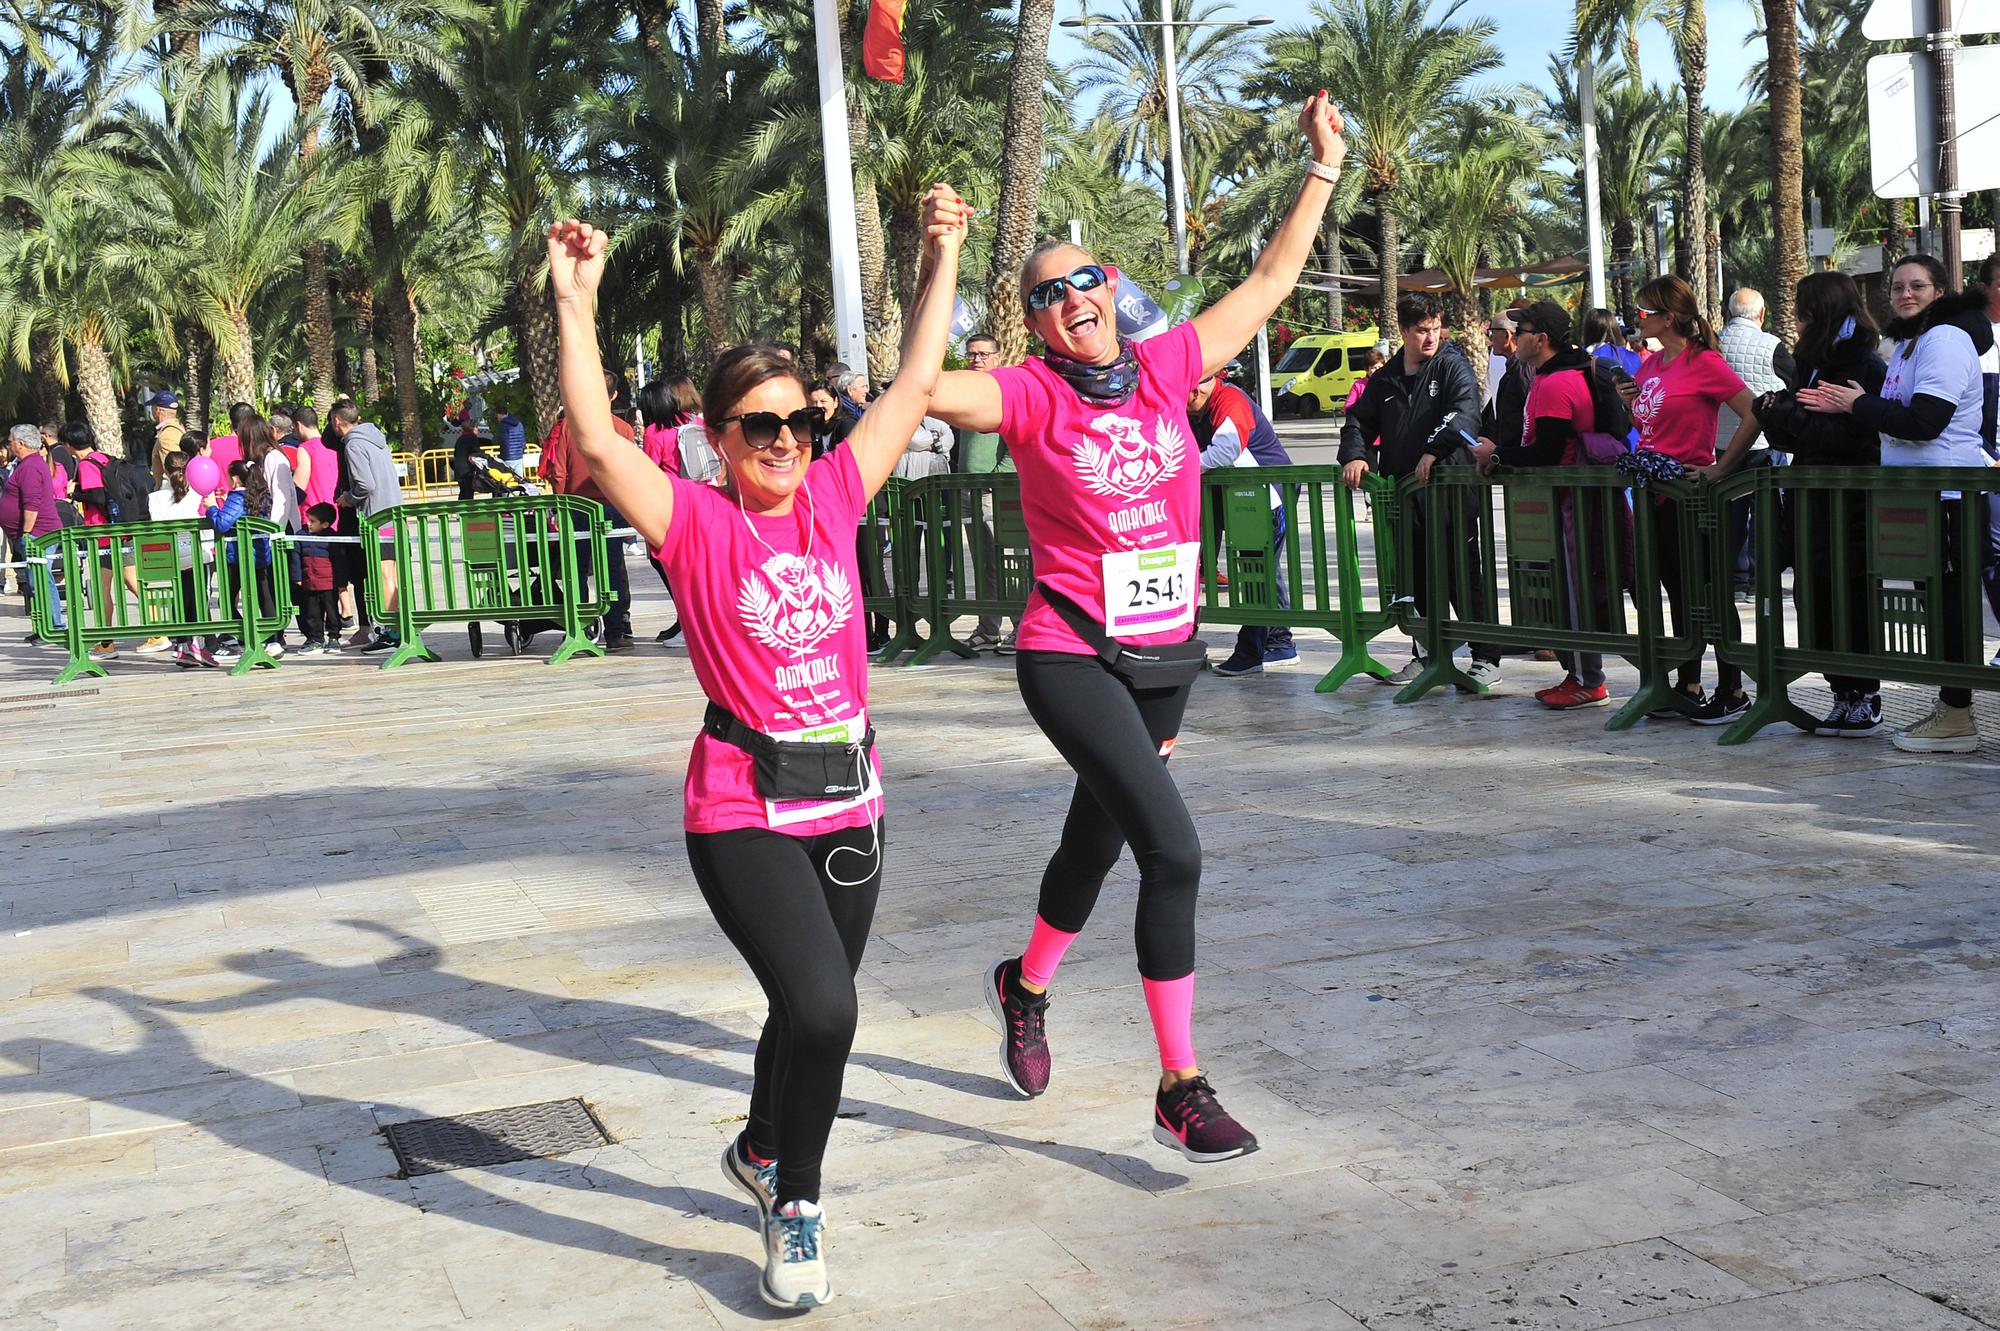 Más de 8.000 solidarios con el cáncer de mama en Elche